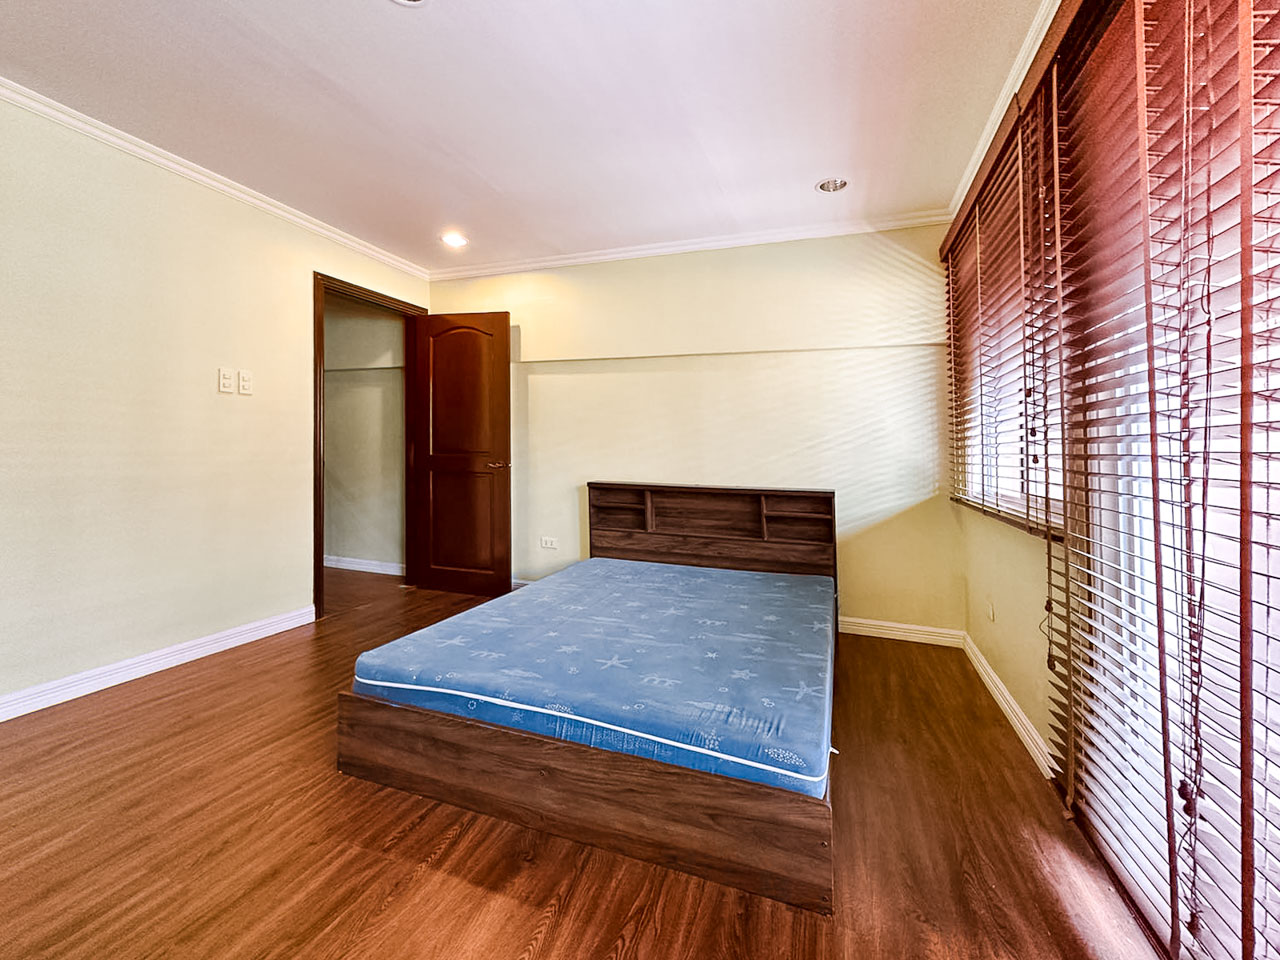 SRBOEP1 3 Bedrooms House for Sale in Lahug Cebu - 12